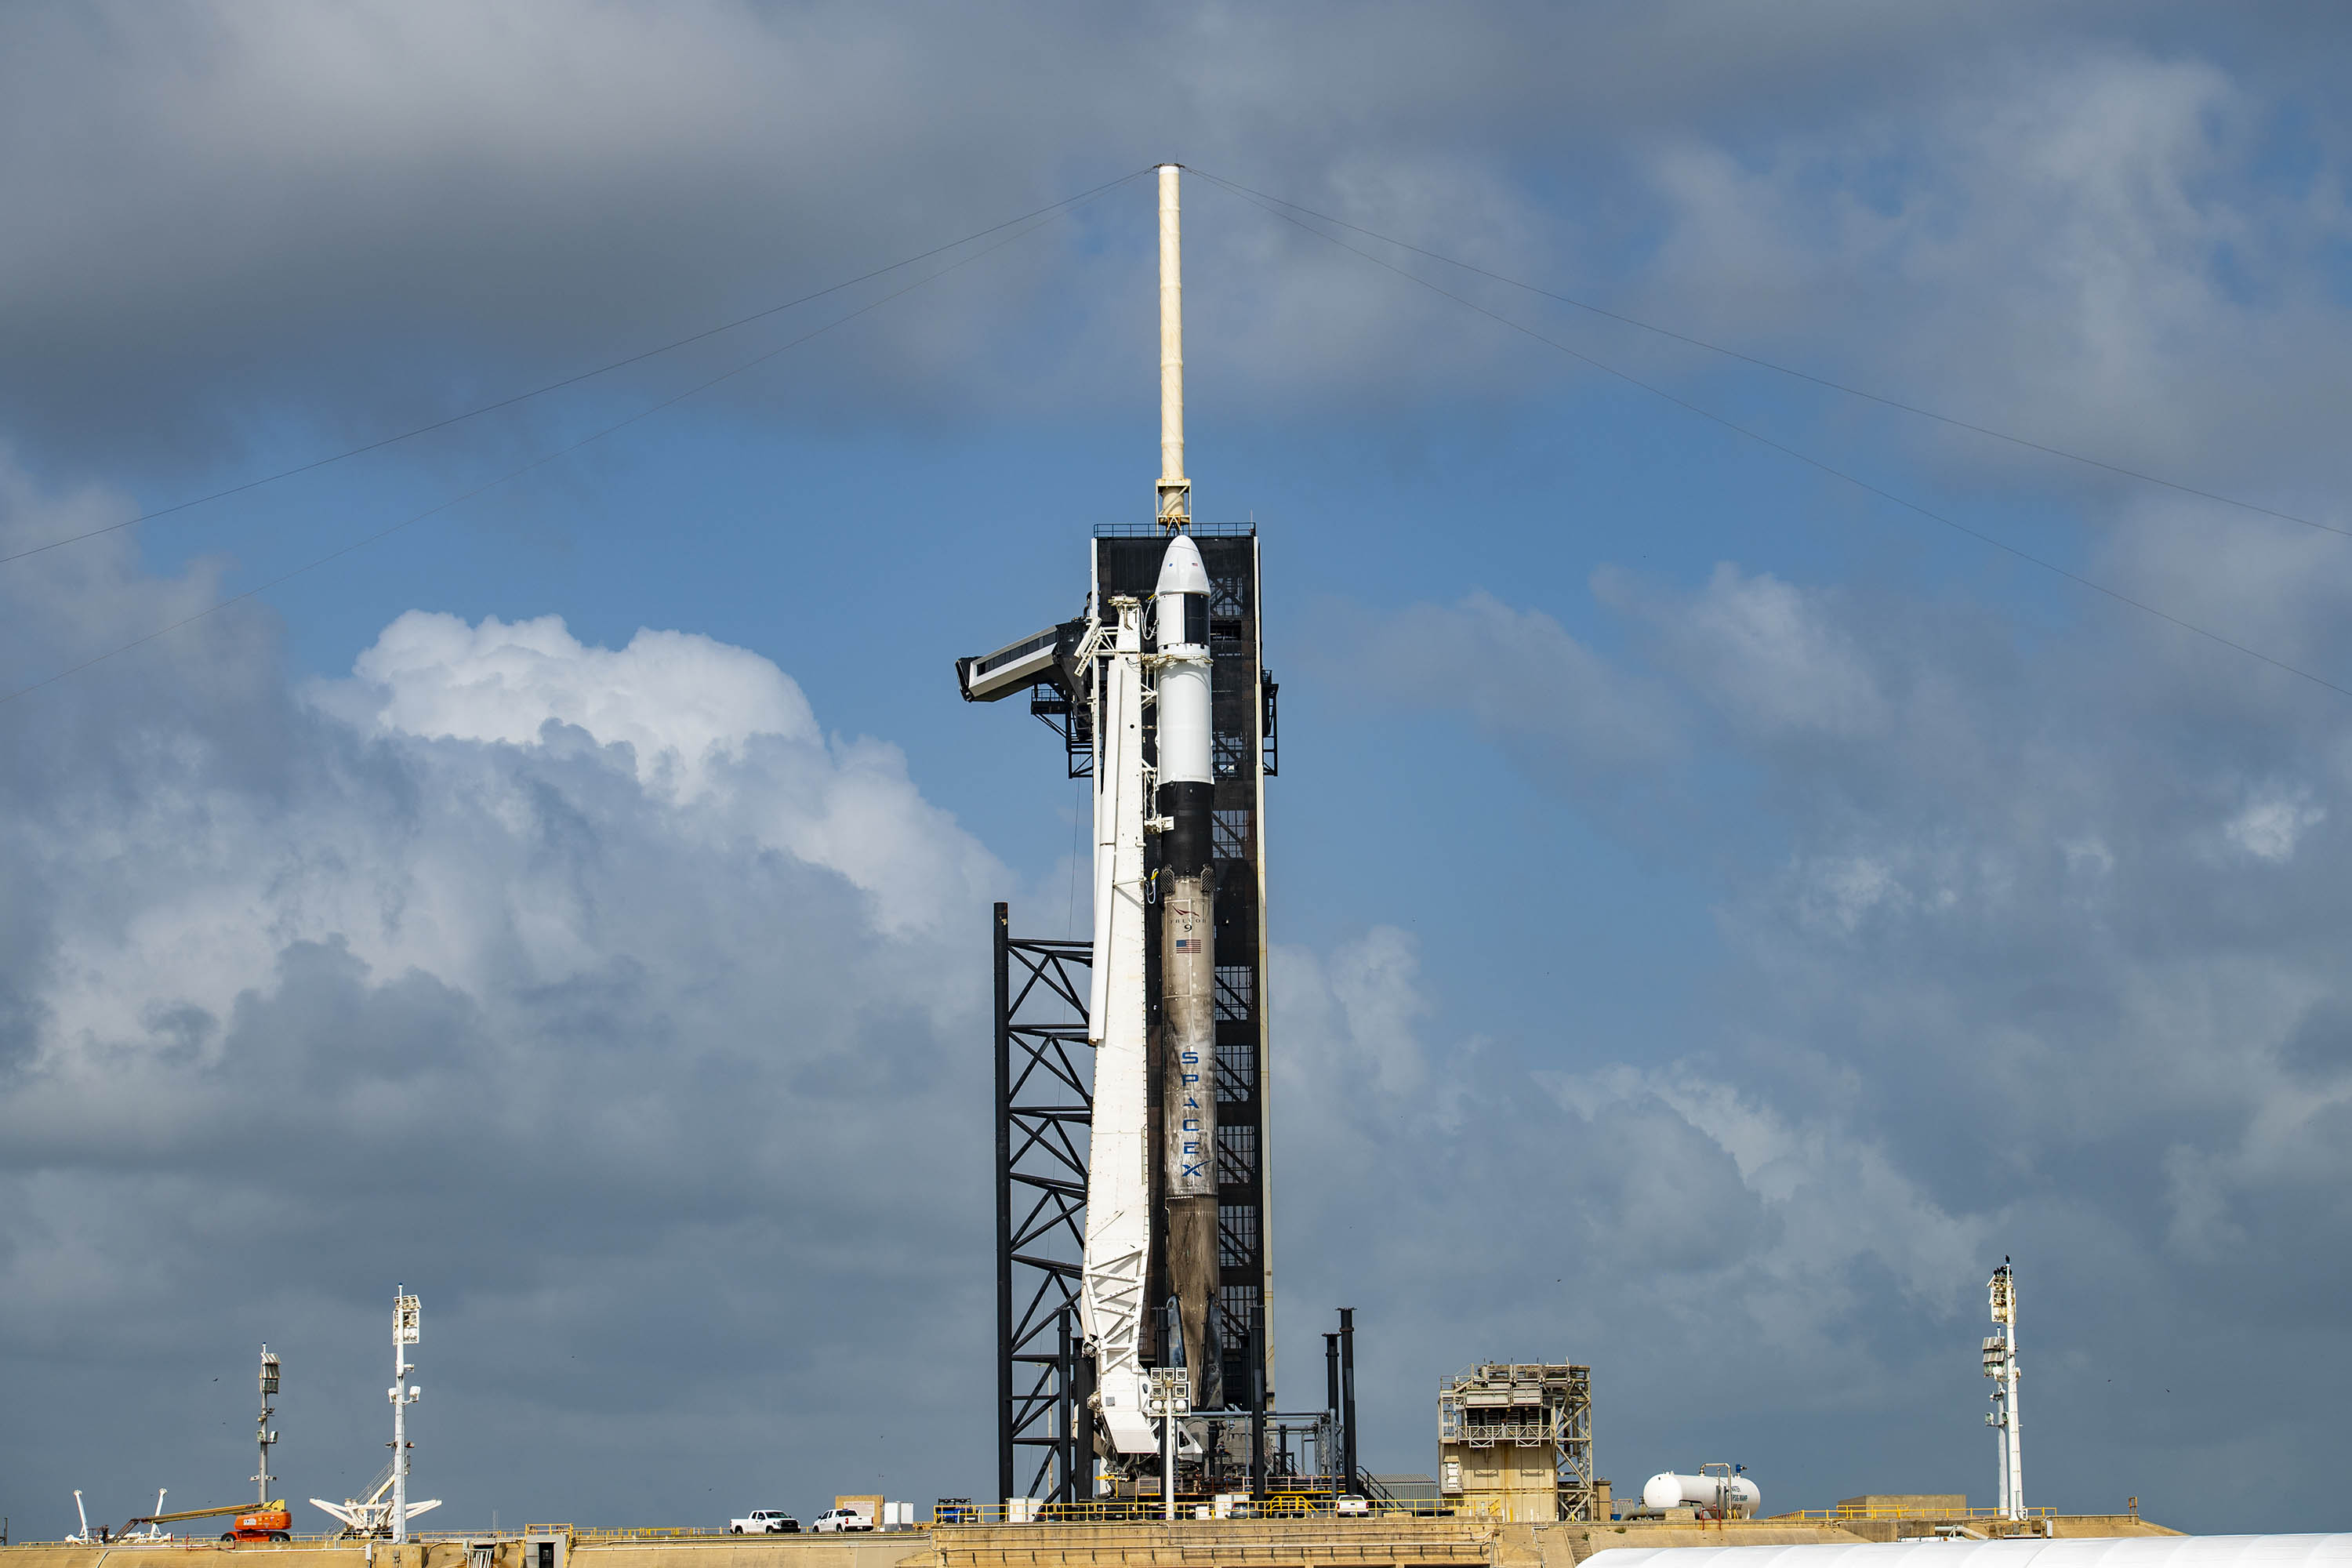 Nosząca ślady trzech poprzednich misji rakieta Falcon 9 wraz z towarową kapsułą Dragon 2 na stanowisku startowym LC-39A w Centrum Kosmicznym im. Kennedy’ego na Florydzie (źródło: NASA Kennedy/SpaceX)